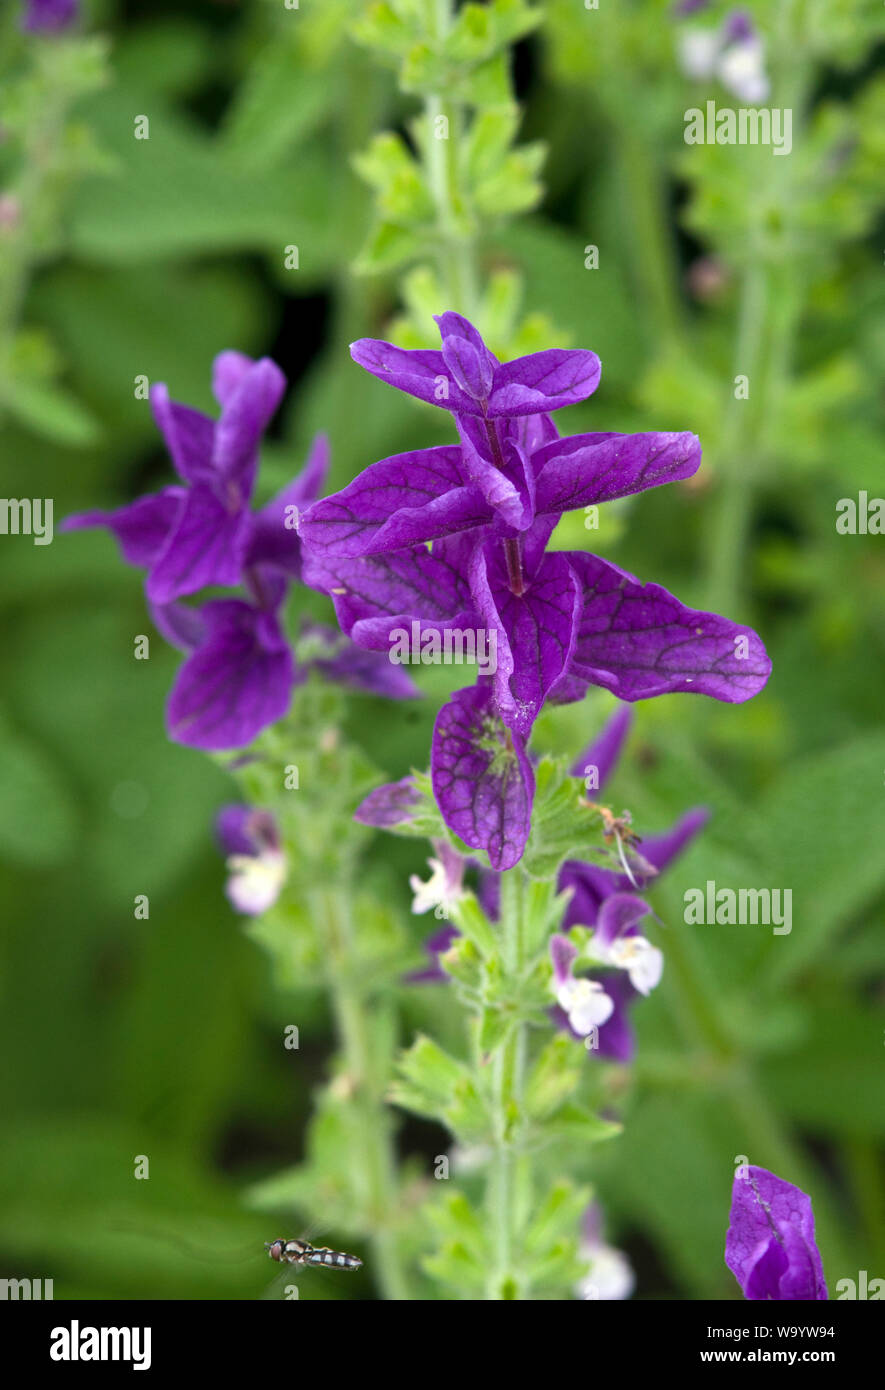 Salvia viridis 'Blue' Stock Photo